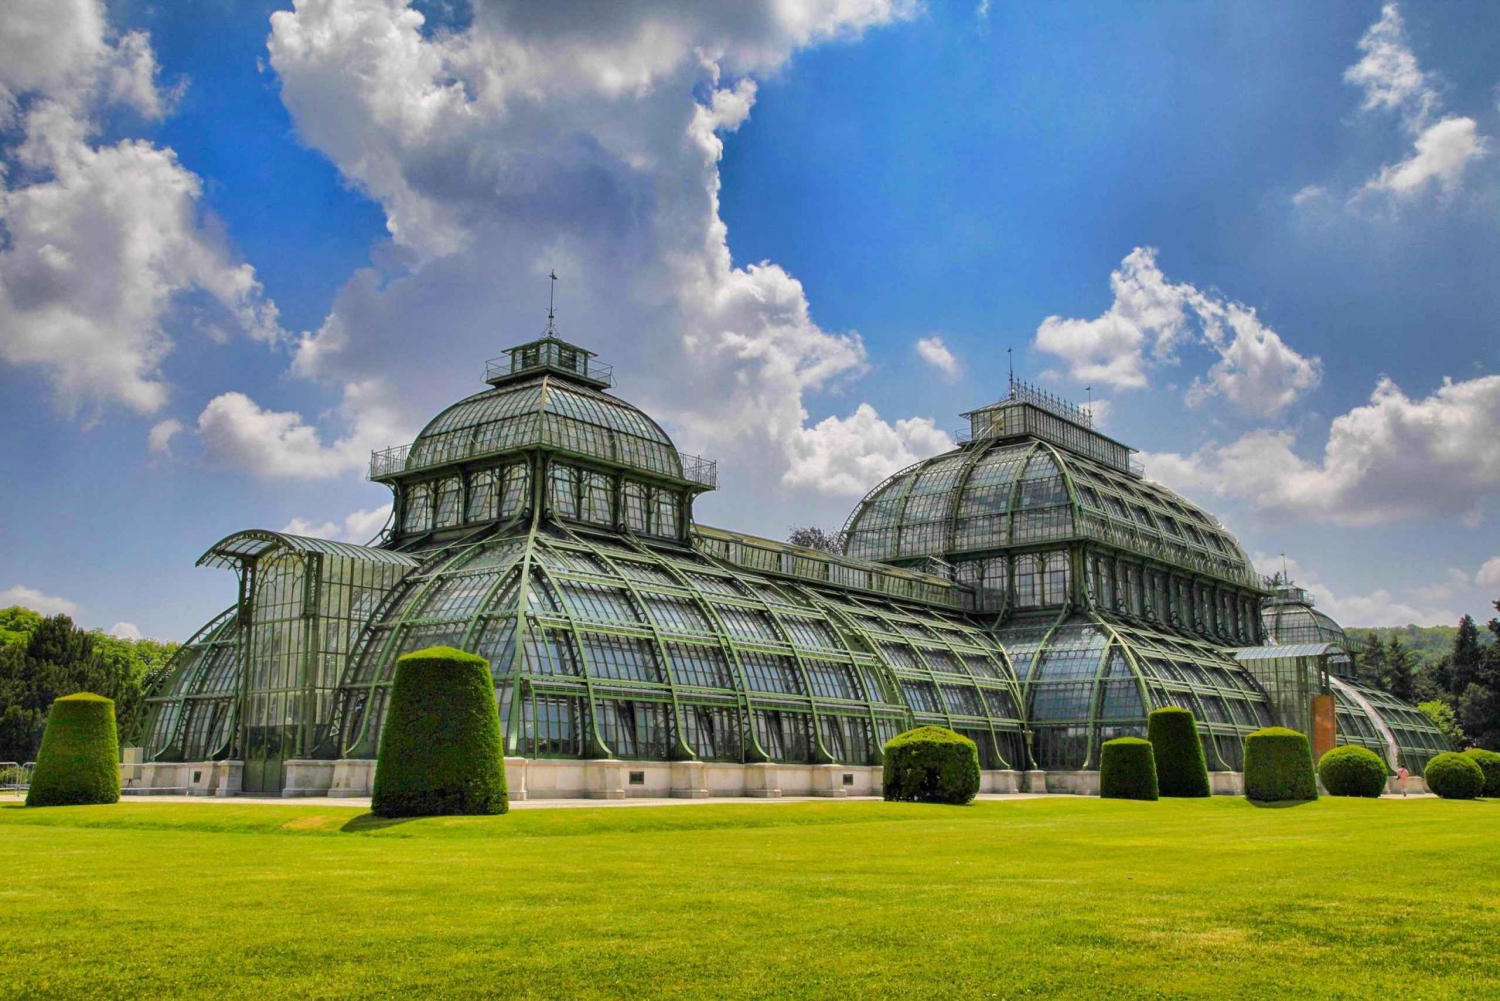 Privat guidet tur til museer og haver i Wien